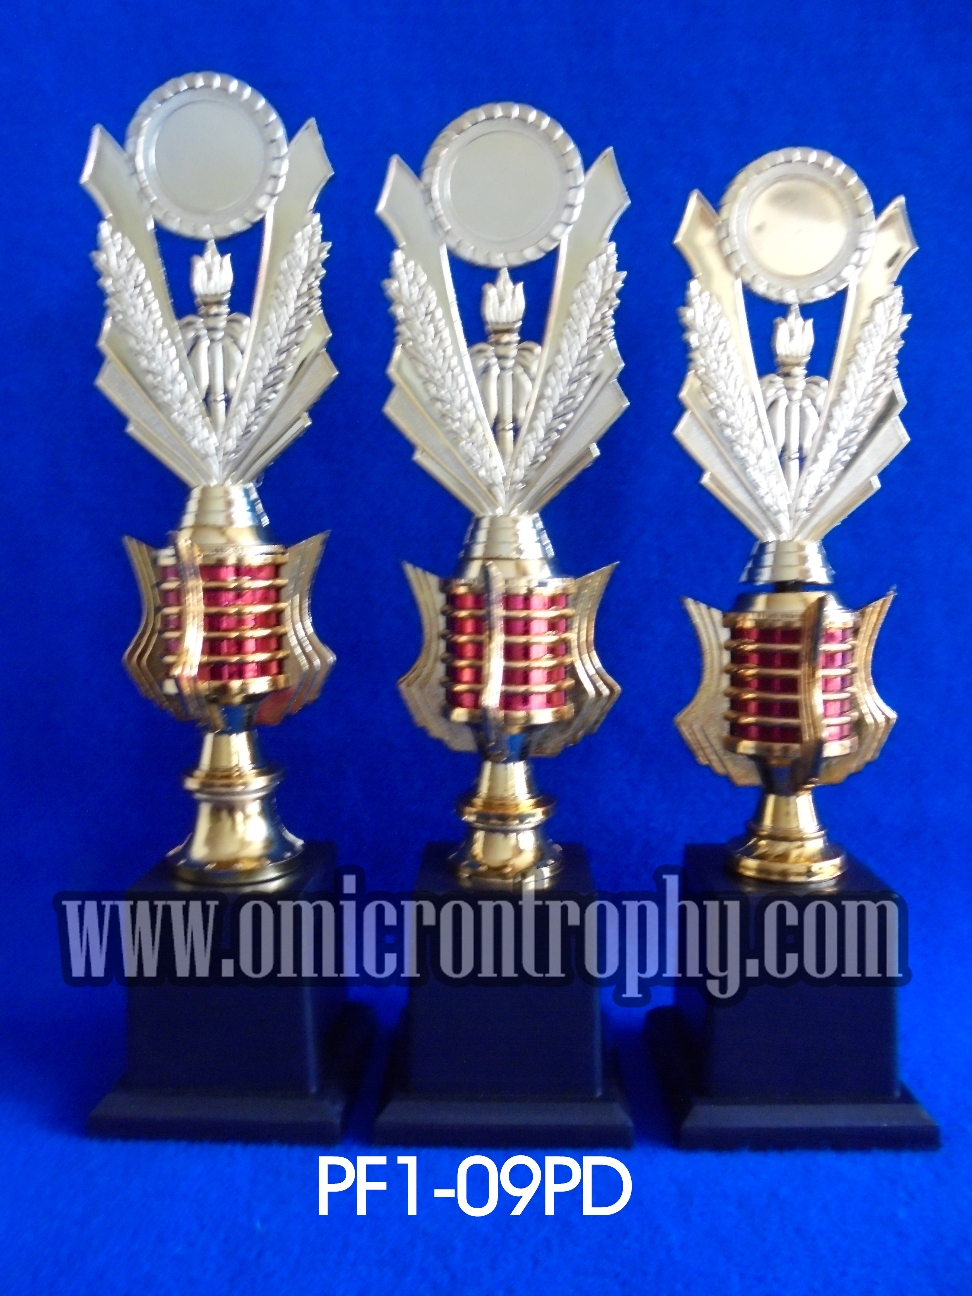 Jual Piala Murah - Jual Piala Online – Distributor Piala Online